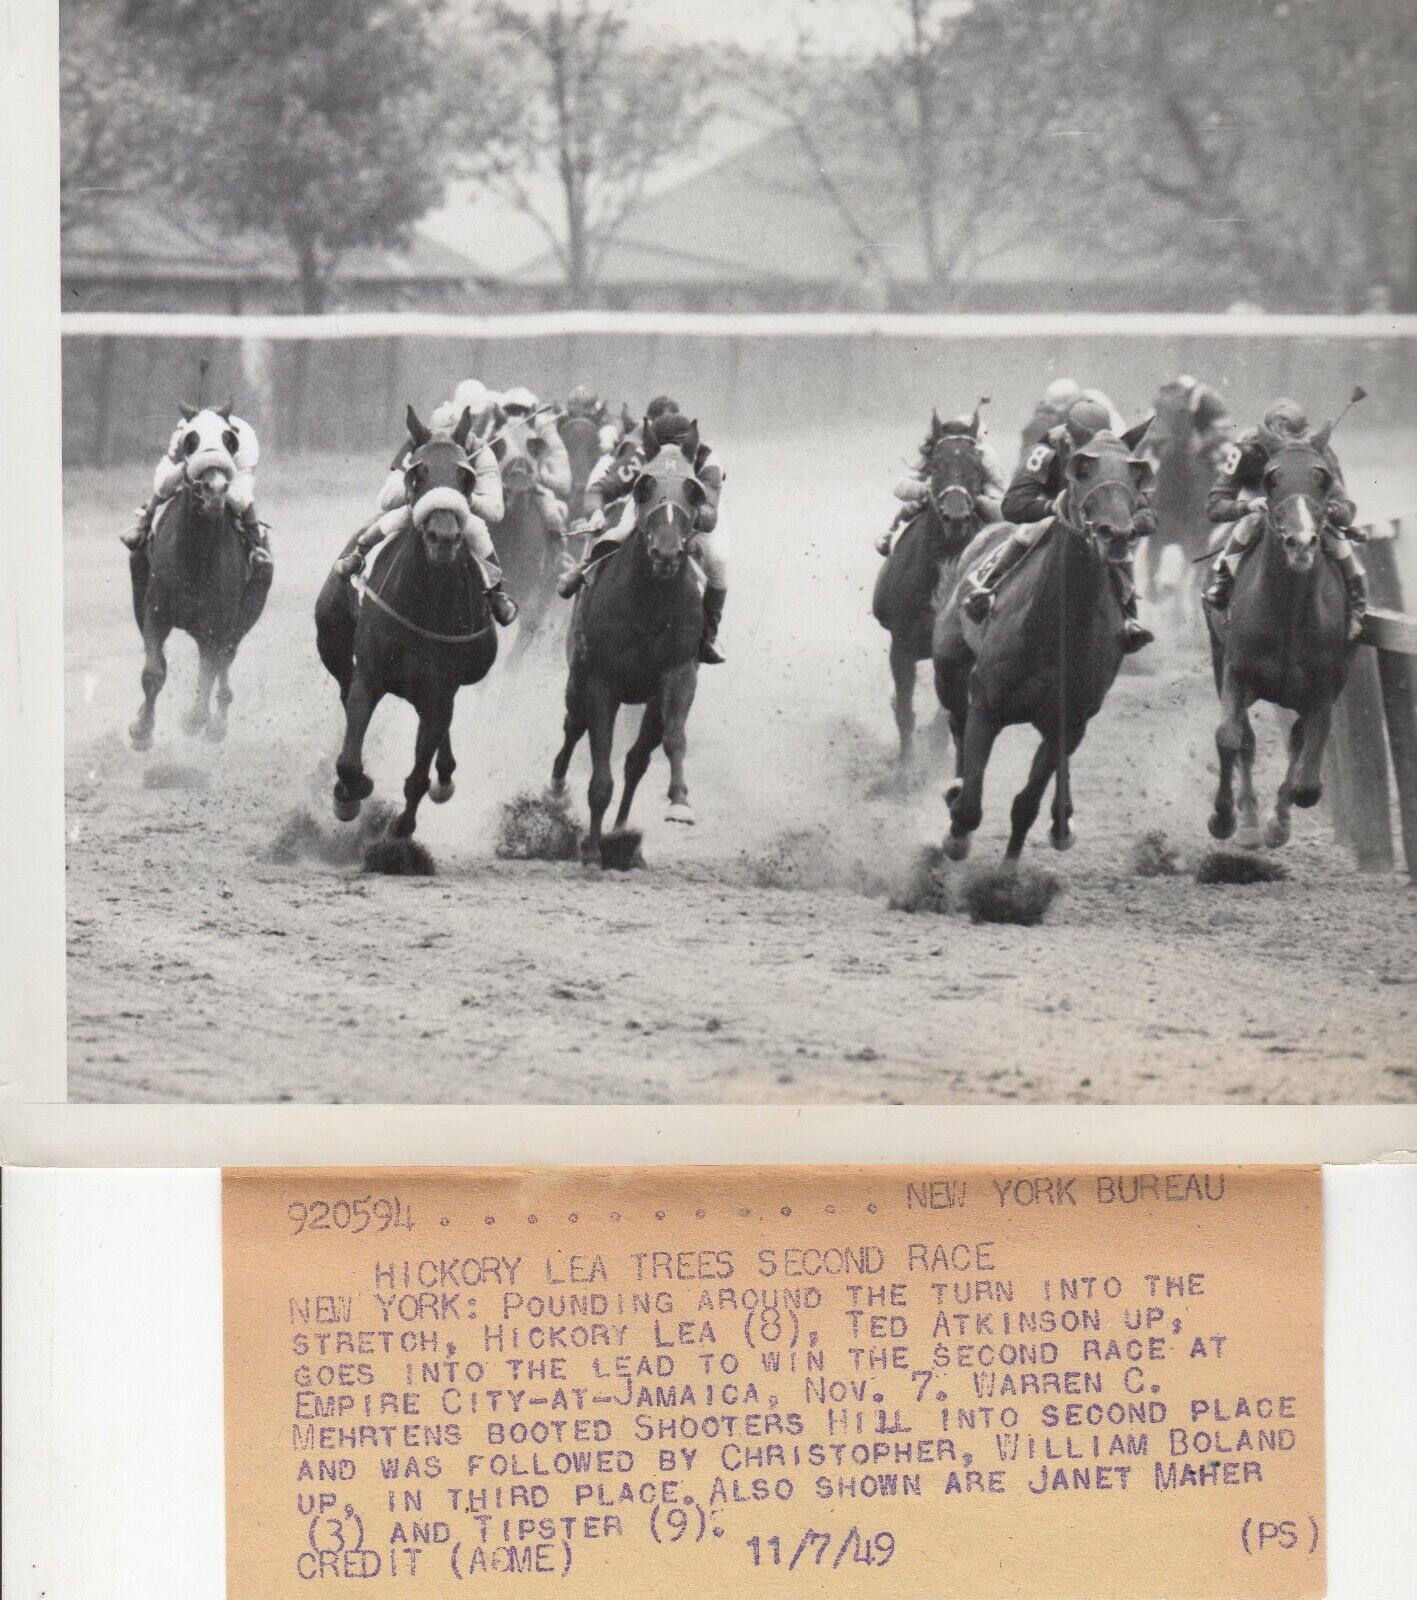 1949 Press Photo - HICKORY LEA TREES - EMPIRE CITY  -  Horse Racing Race 